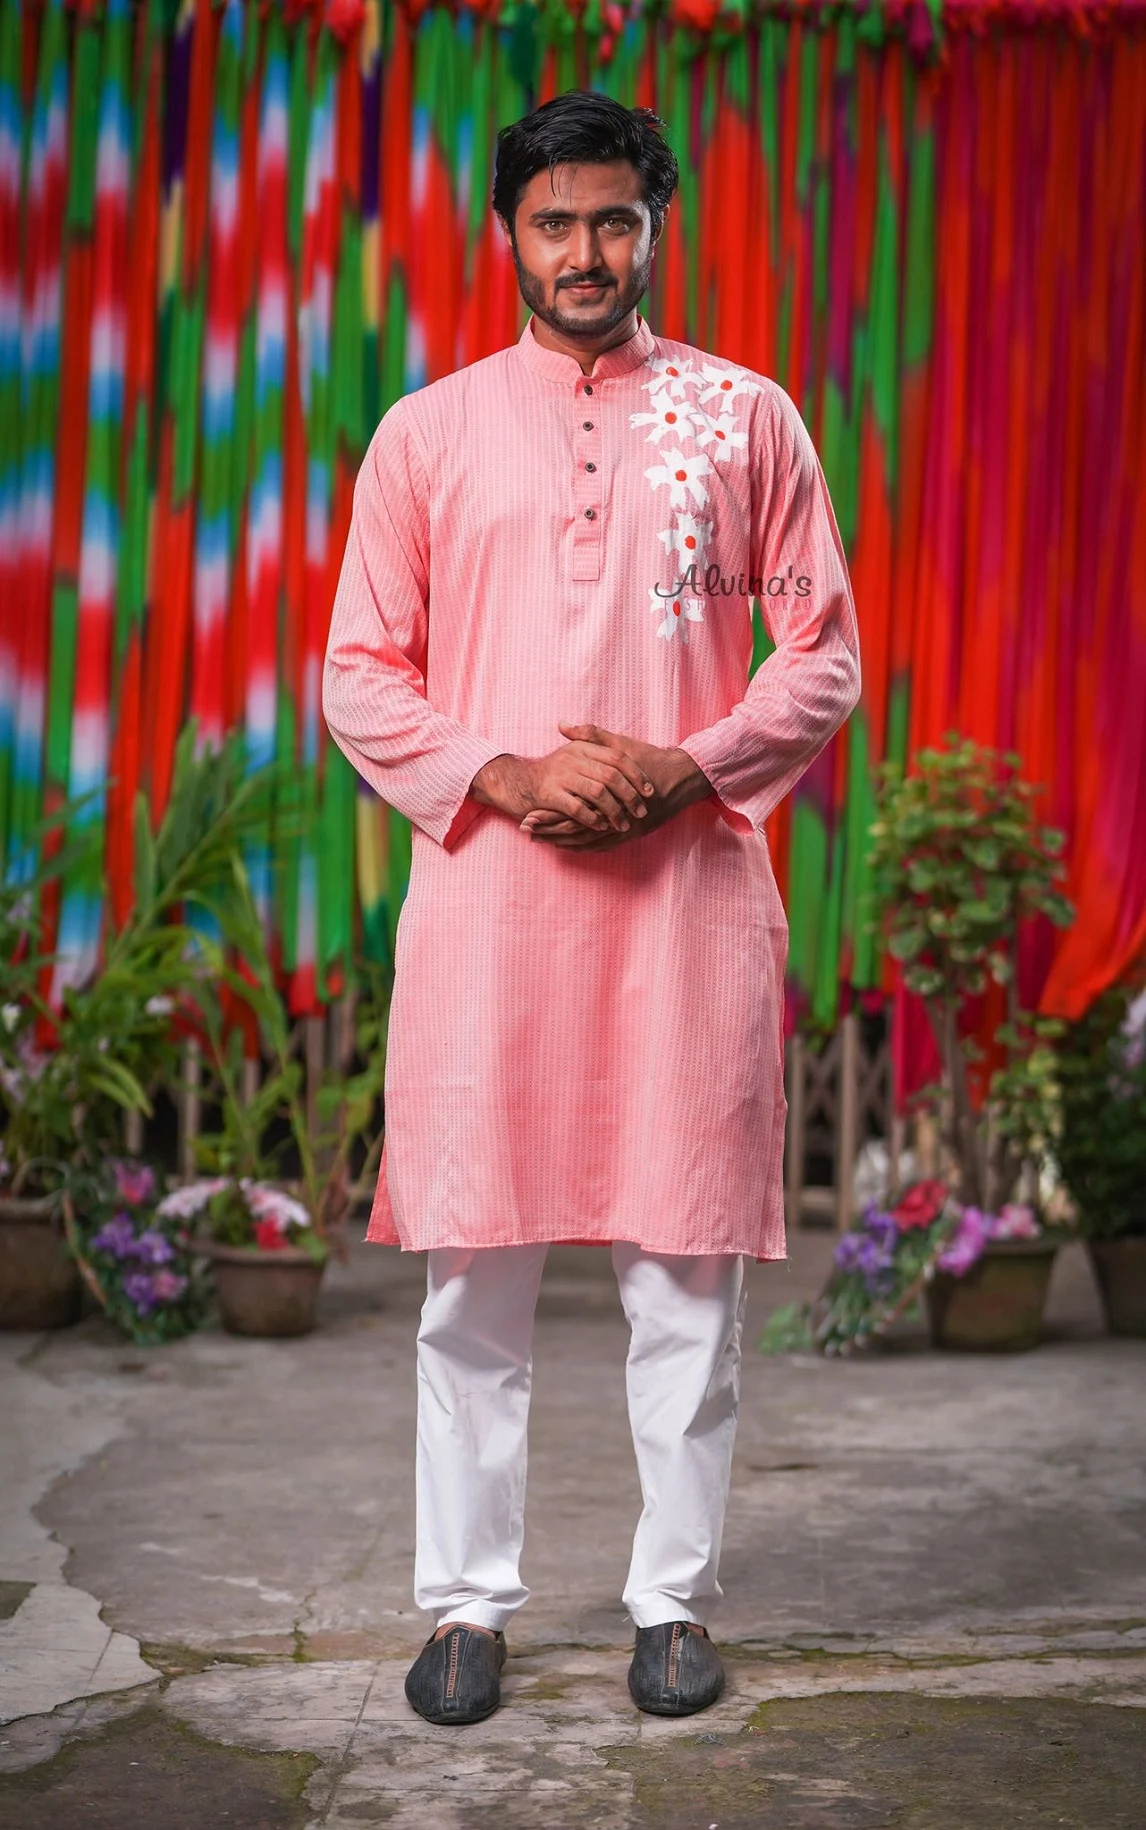 pink panjabi design - Colorful Punjabi Designs - NeotericIT.com